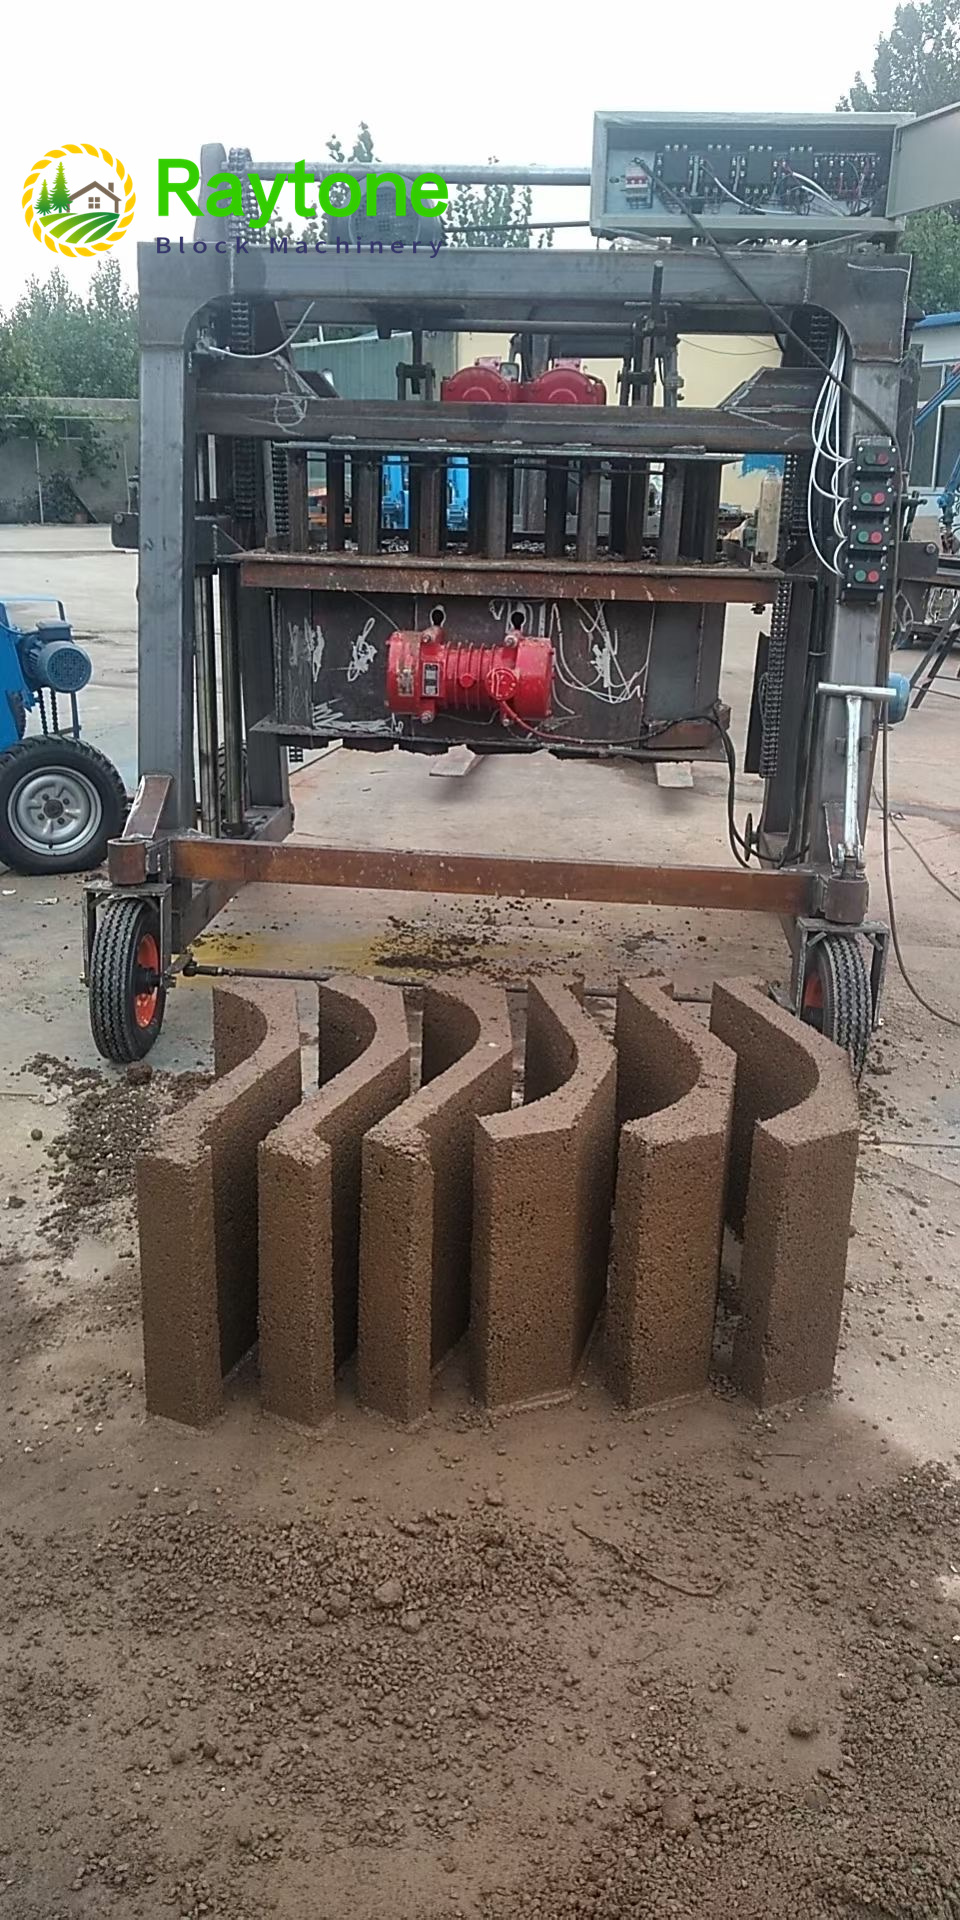 HX-100 У-канальний бетонний цементний водопропускний апарат-RAYTONE- Виробництво блочних машин з хорошим обслуговуванням, Машина для виготовлення бетонних блоків, Машина для виготовлення цегли, Машина для виготовлення блоків, Машина для виготовлення блоків, Машина для виготовлення цегли, Машина для виготовлення цементних блоків, Фабрика блоків, Машина для цементної цегли, Виробництво цегляних машин, автоматичних блокових машин, мобільних блоків, автоматичних цегляних машин, напівавтоматичних блоків, ручних блоків, напівавтоматичних цегляних машин, ручних цегляних машин, піддонів для виготовлення цегли, цегляних піддонів, цегляних піддонів, цегляних піддонів, GMT піддон, волокнистий цегляний піддон, машина для виготовлення глиняної цегли